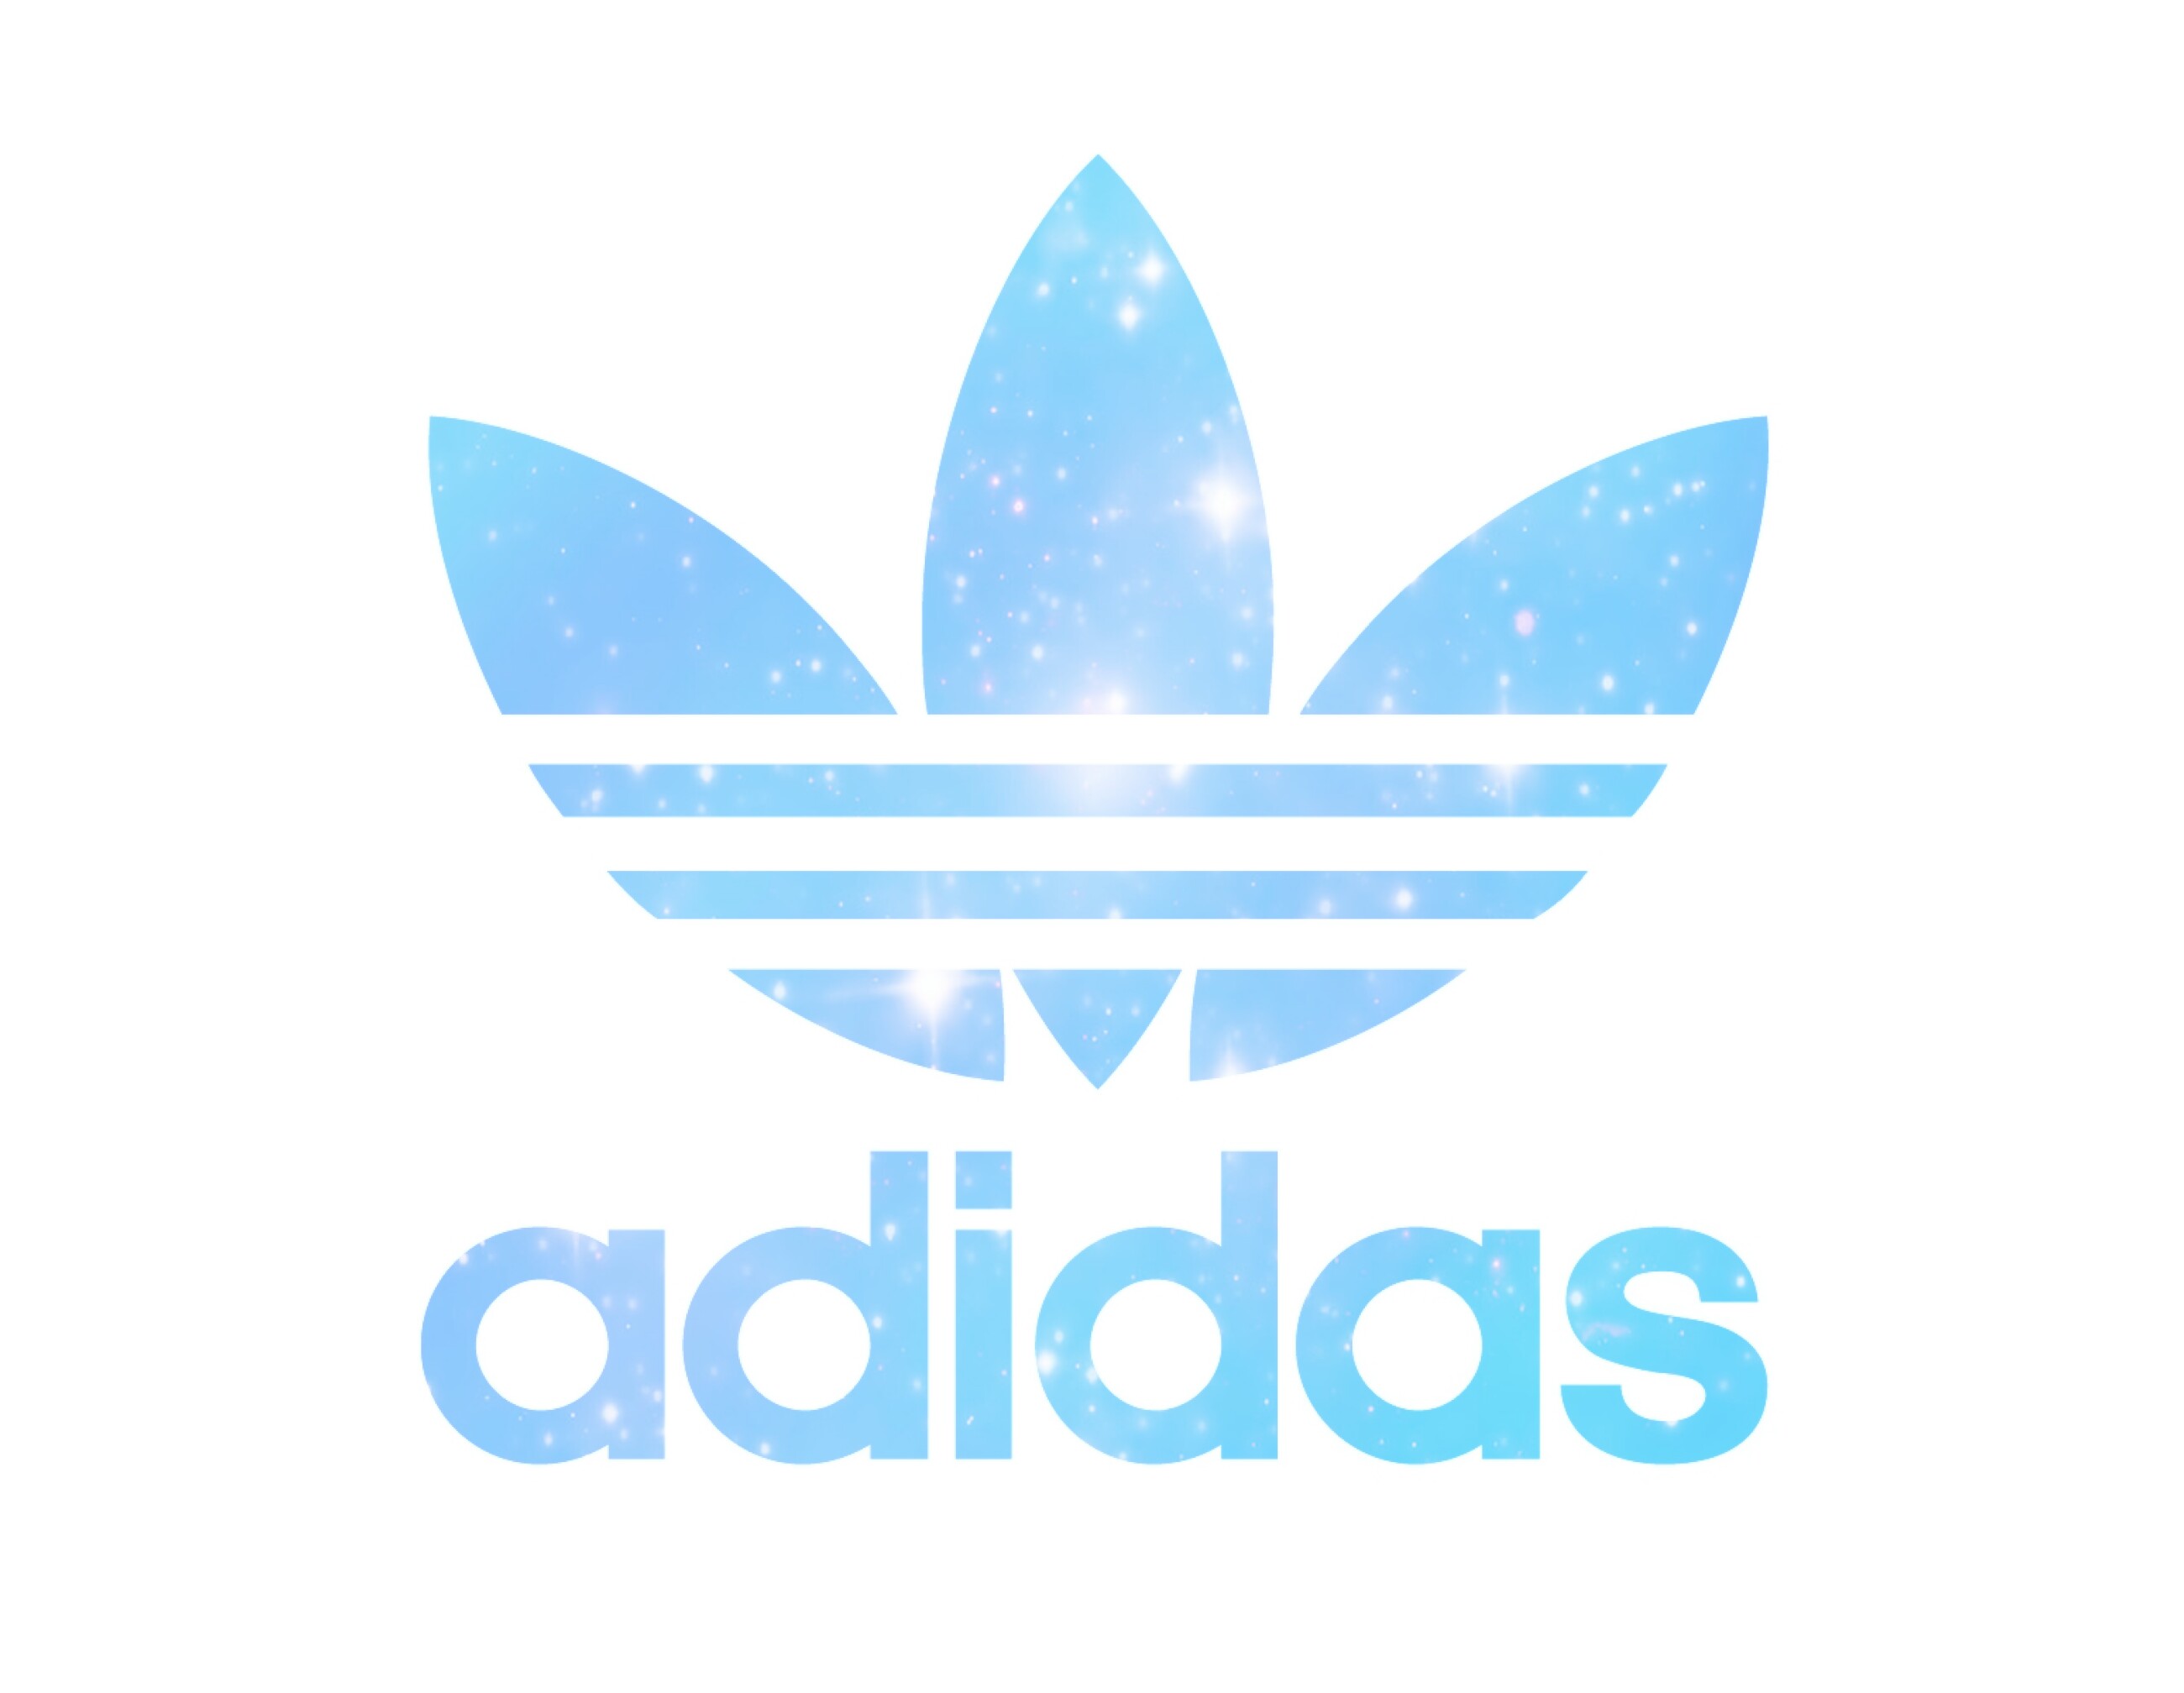 アディダス Adidas ゆめかわいい アイコン ロゴ Image By Fuka